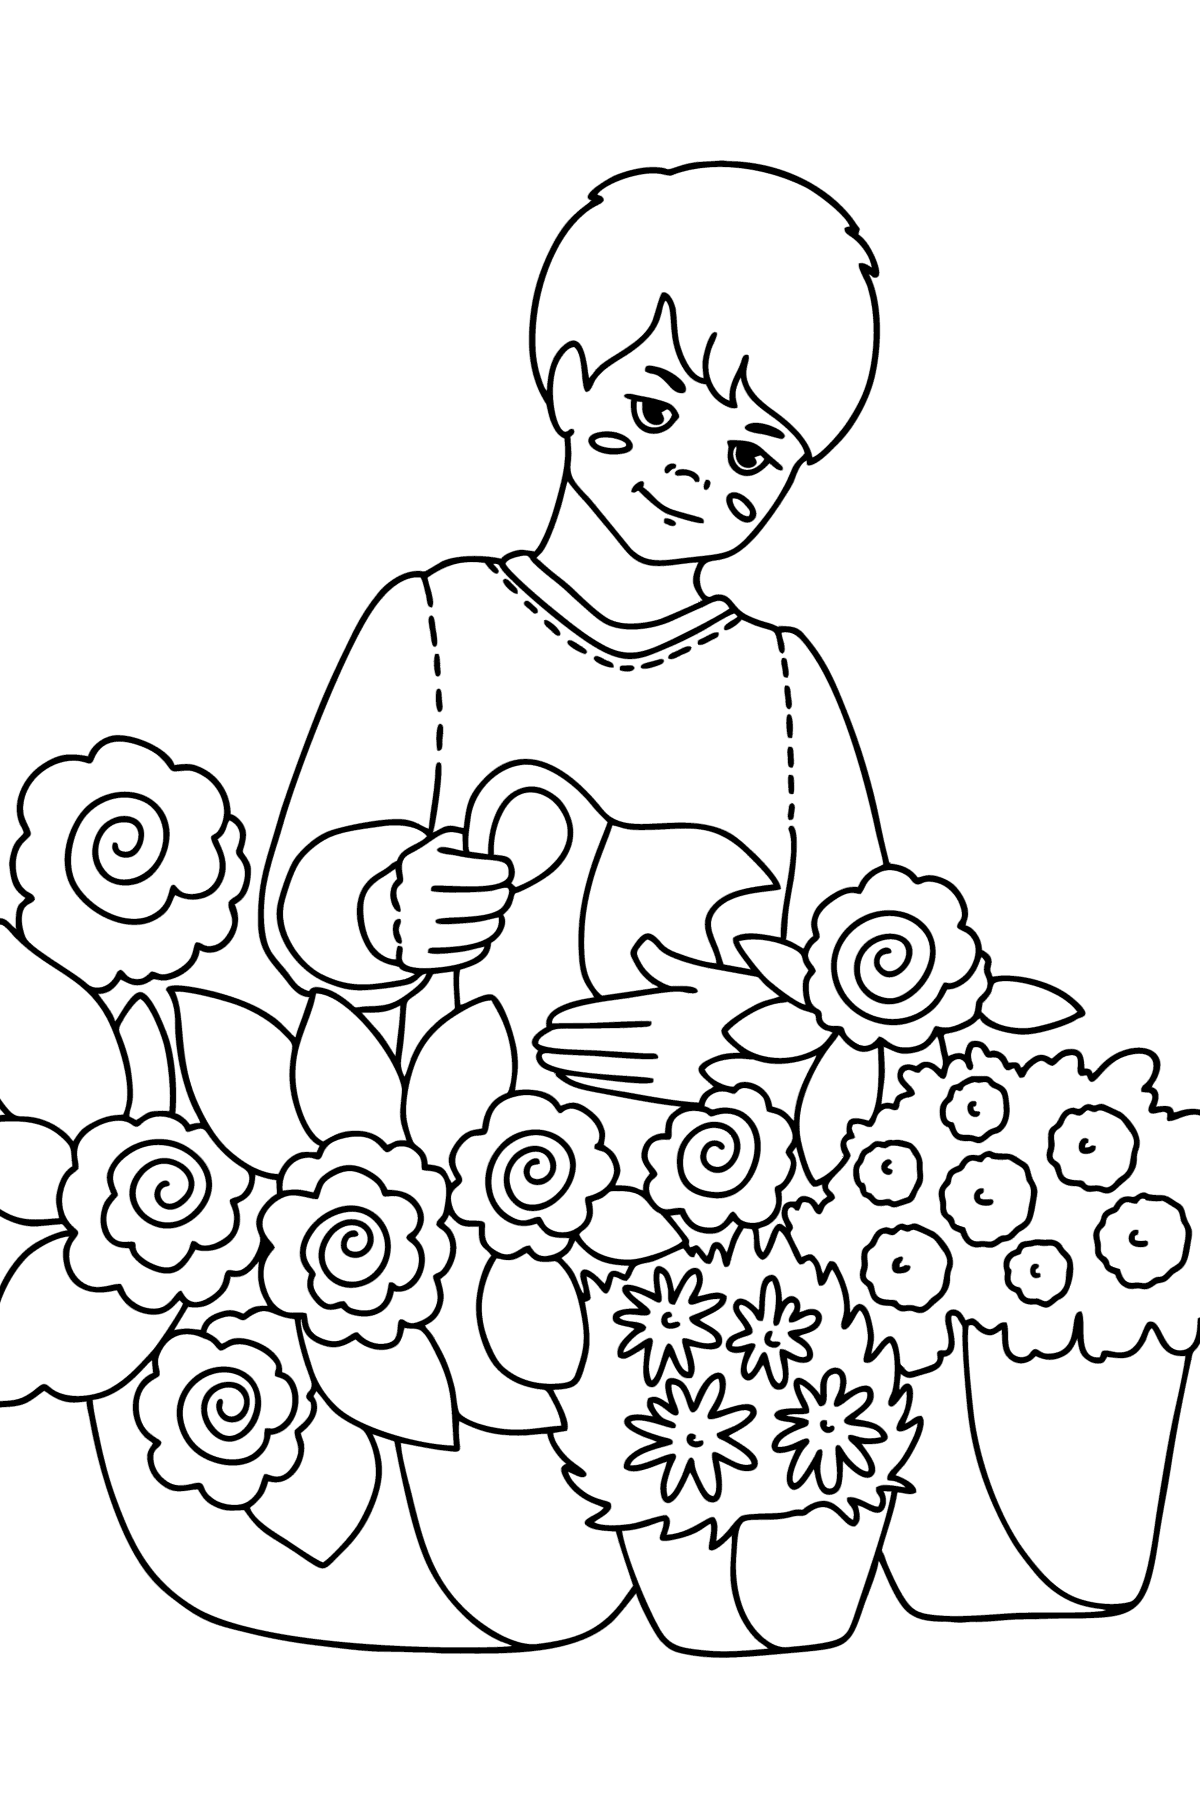 Dibujo Chico regando flores para colorear - Dibujos para Colorear para Niños